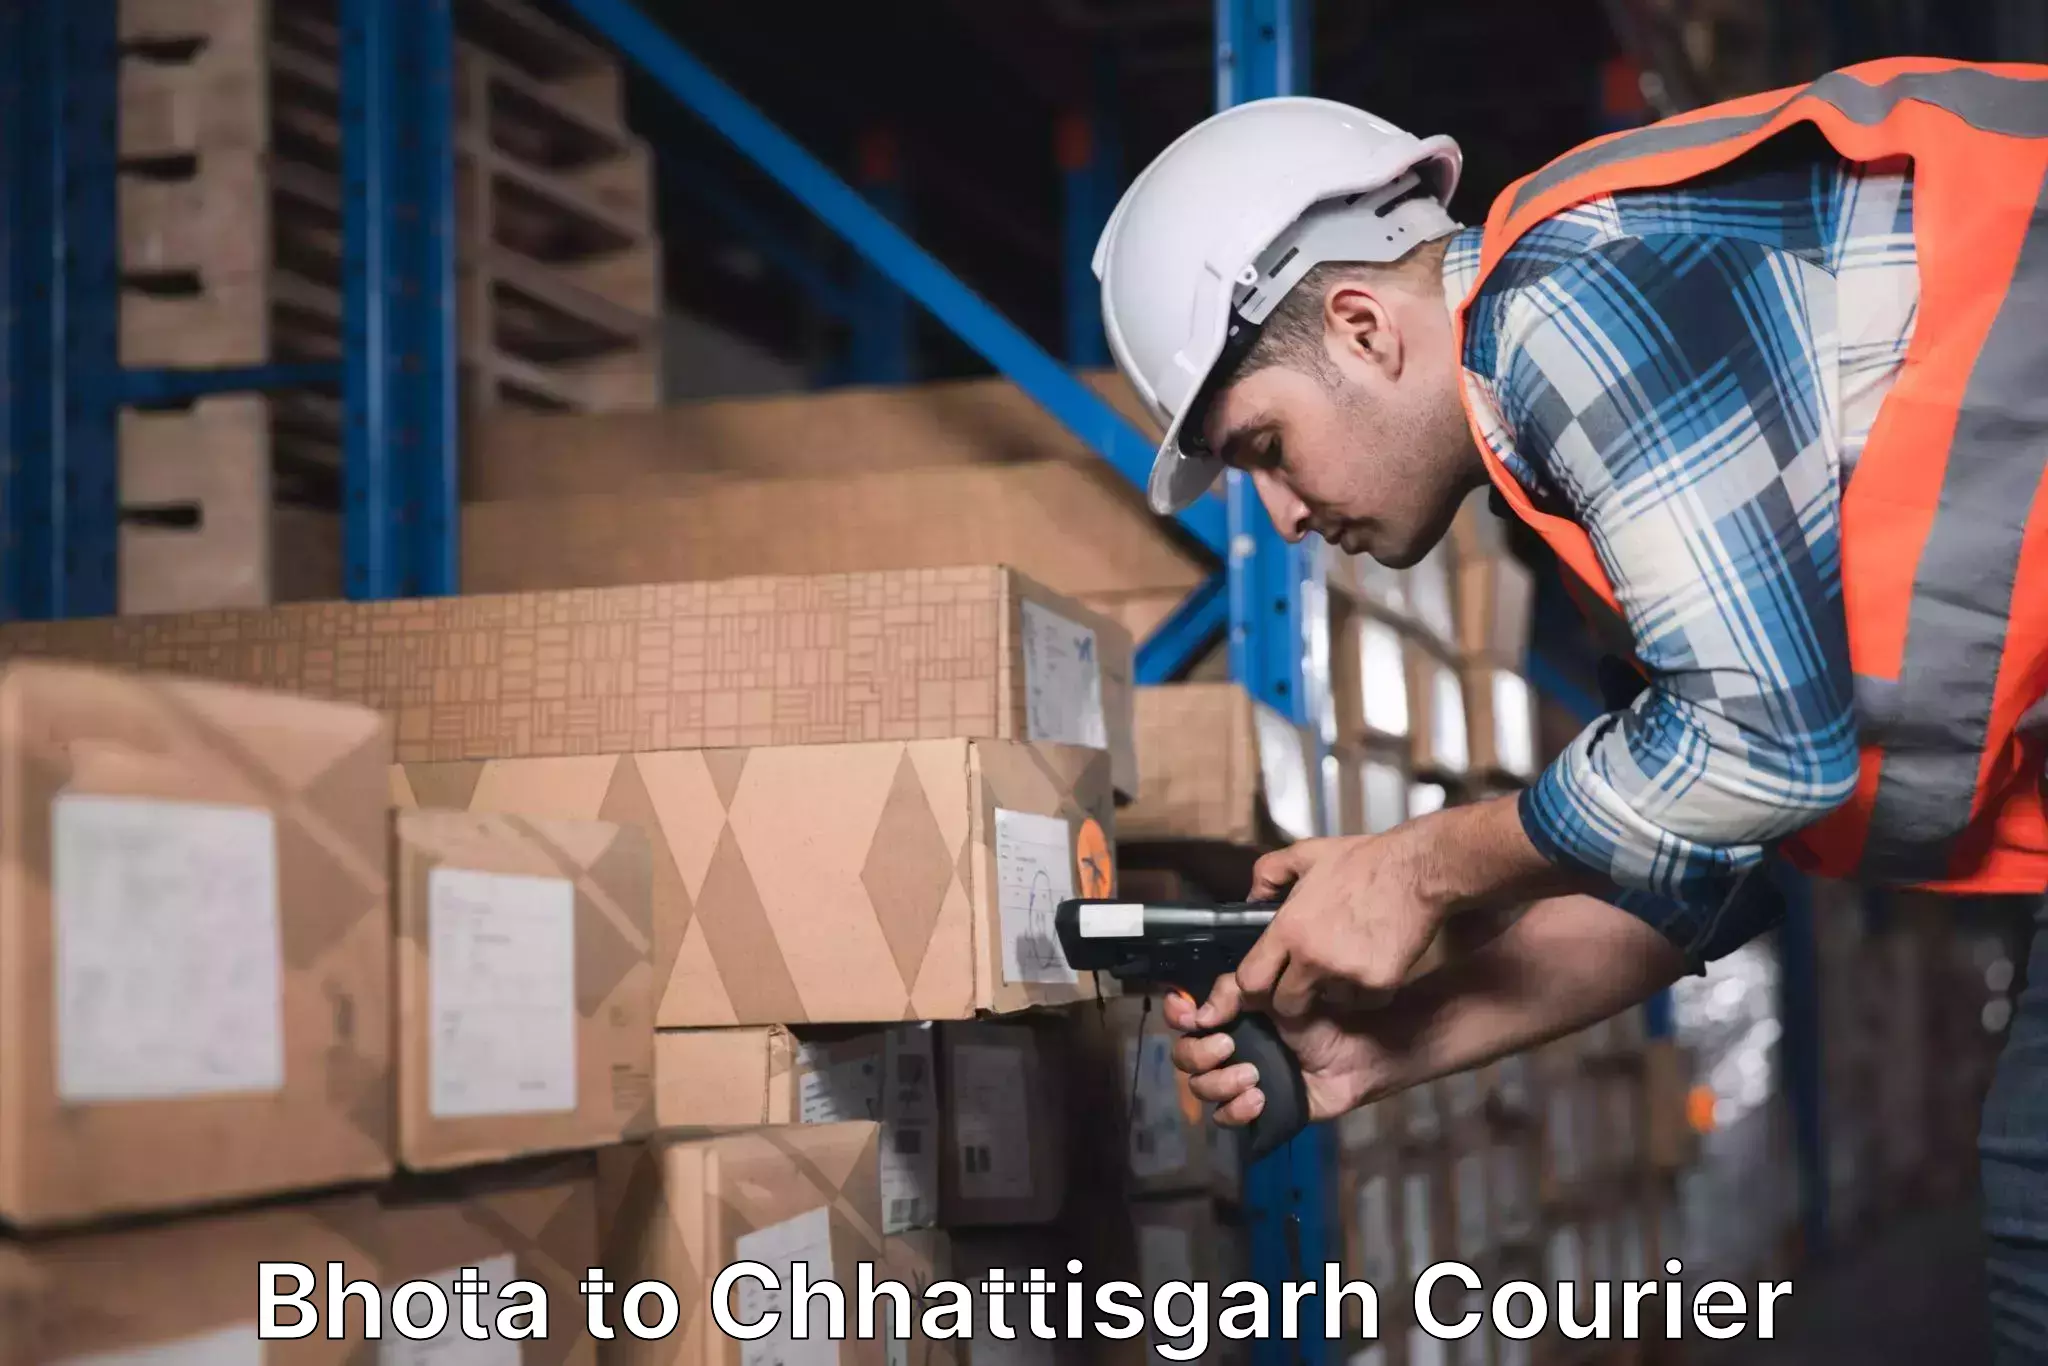 Custom courier packaging in Bhota to Chhattisgarh